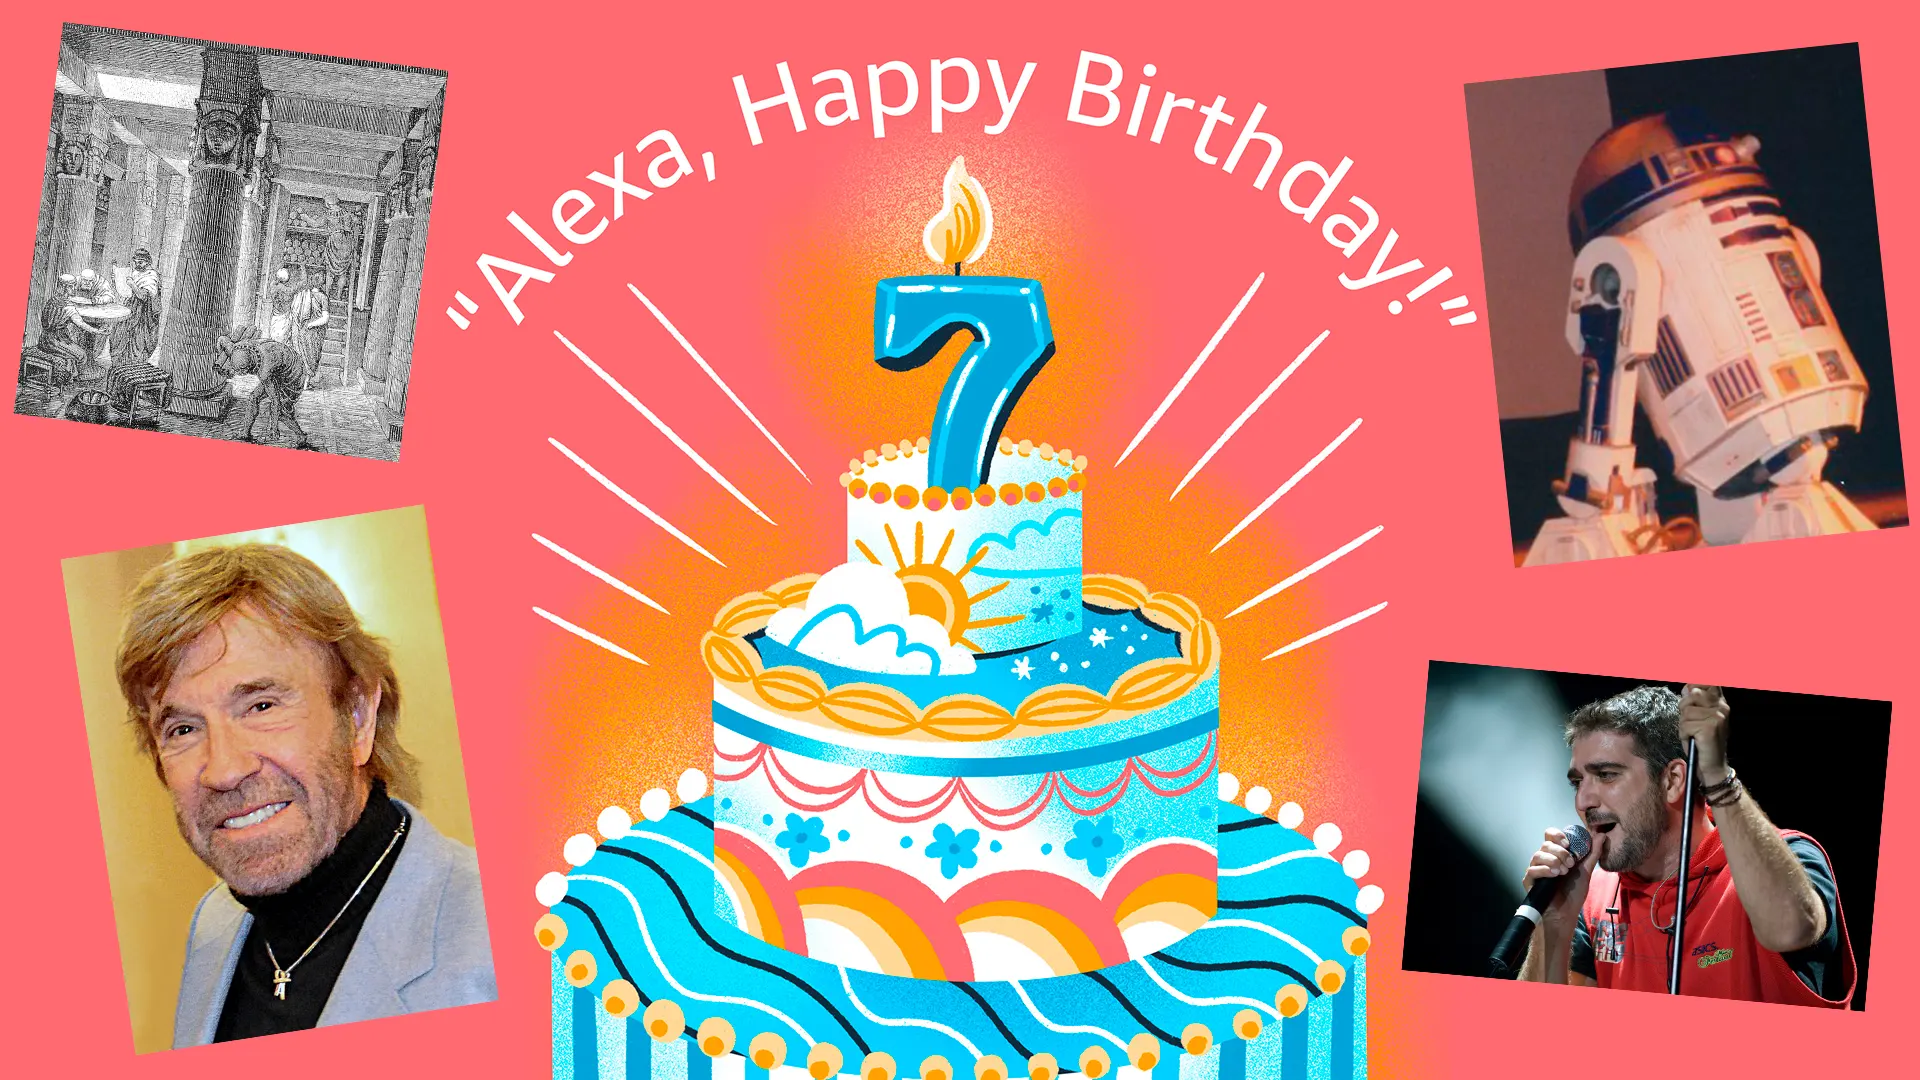 Amazon te da 20€ si respondes a Alexa a unas preguntas por su cumpleaños